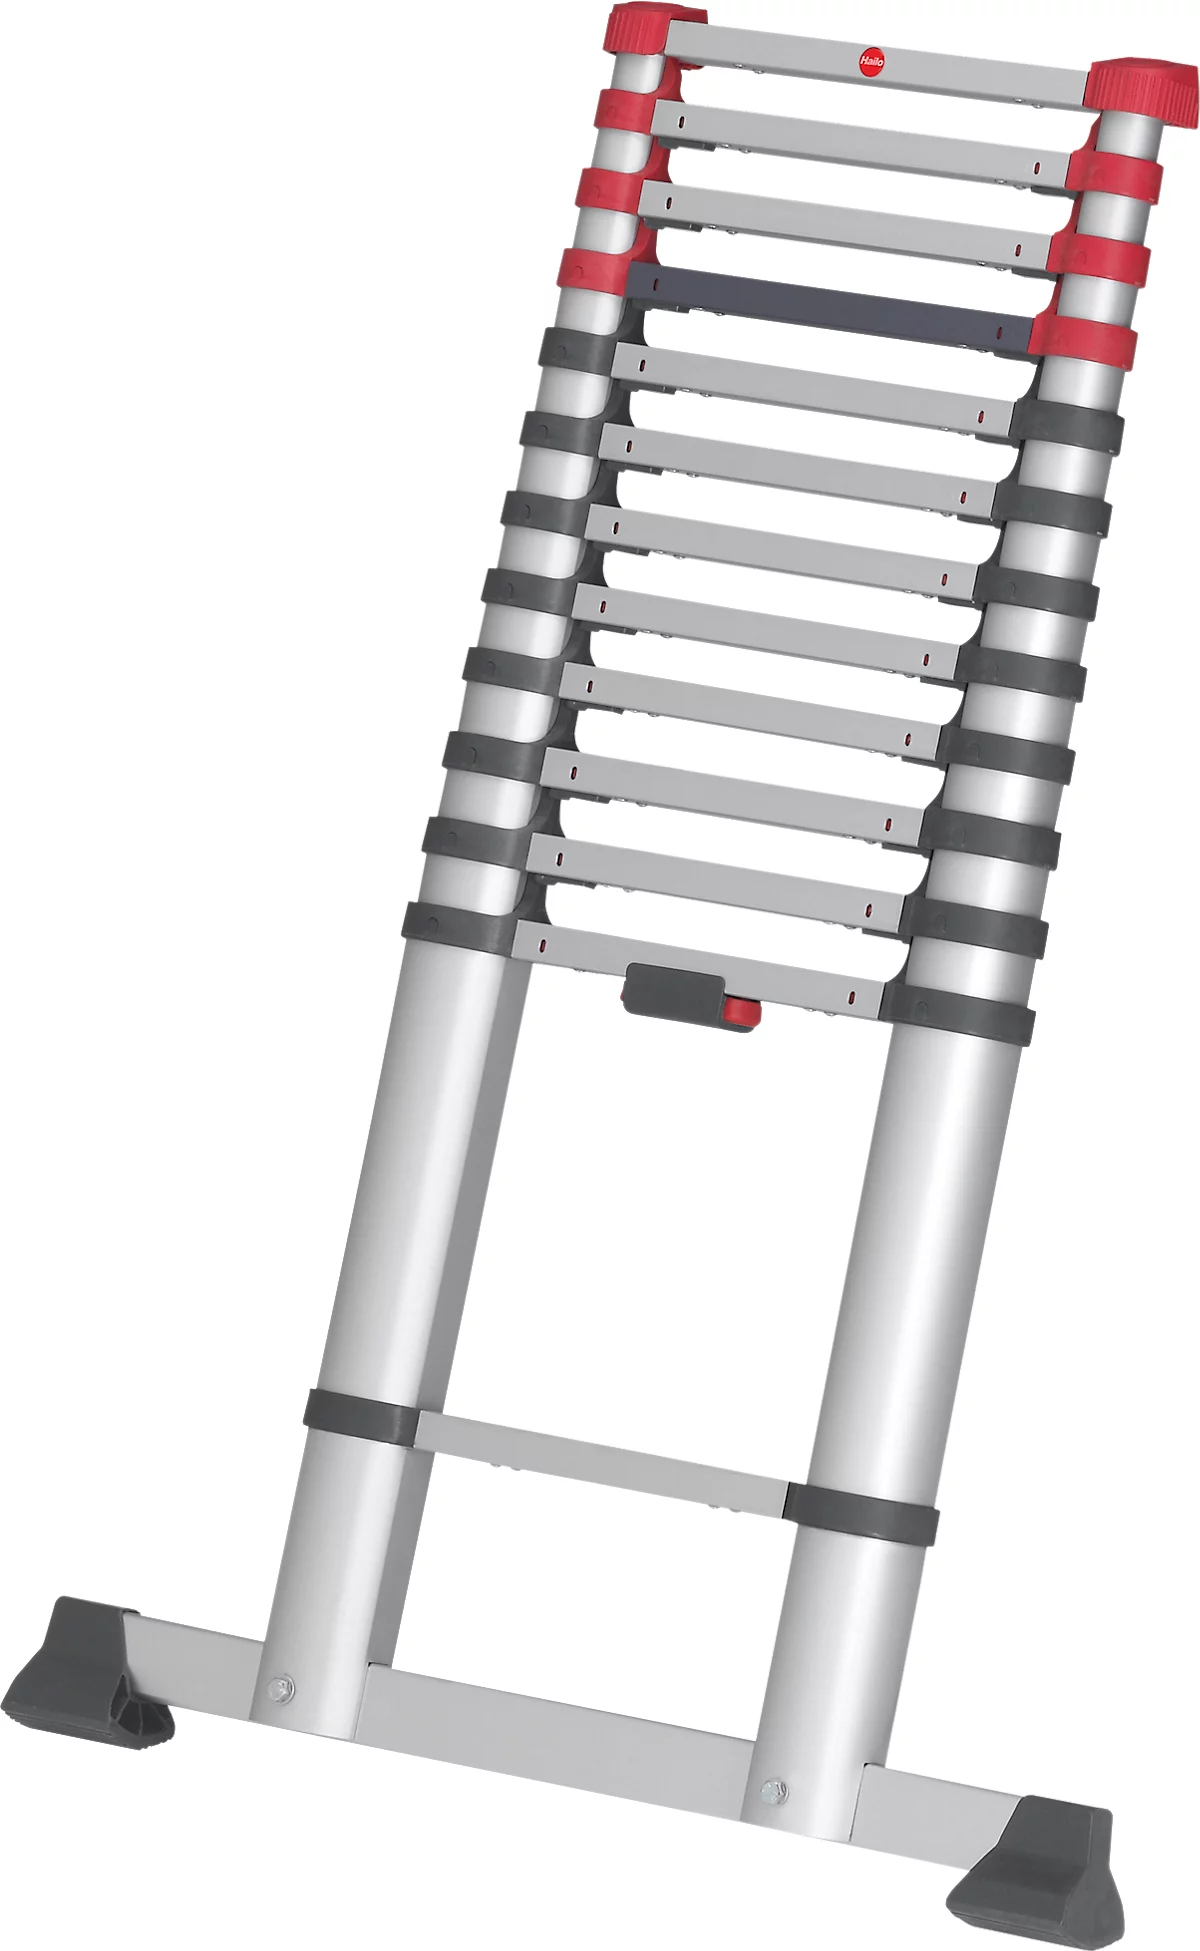 Teleskopleiter Hailo T80 FlexLine, EN 131-6, höhenverstellbar, Einhand-Entriegelung, Quertraverse, bis 150 kg, 13 Sprossen